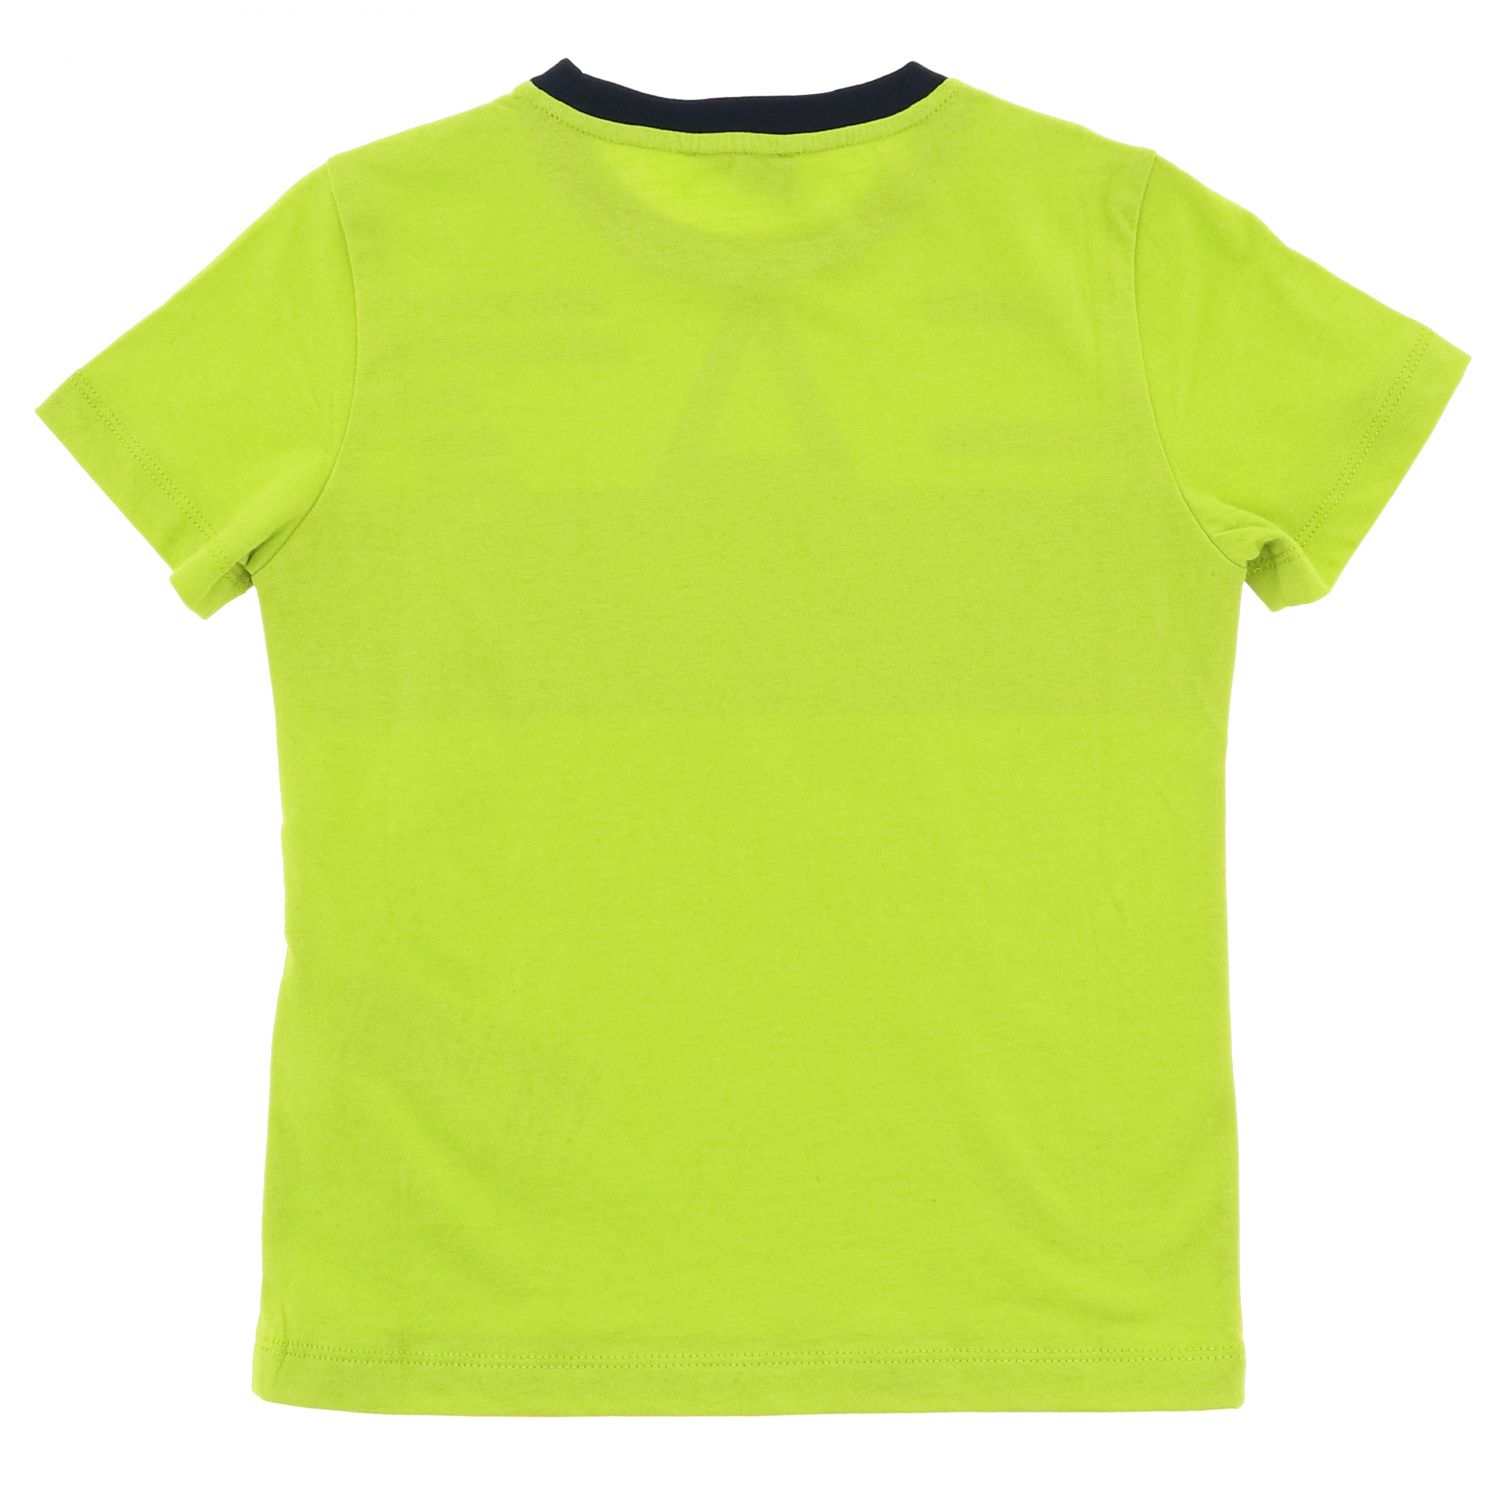 ea7 green t shirt